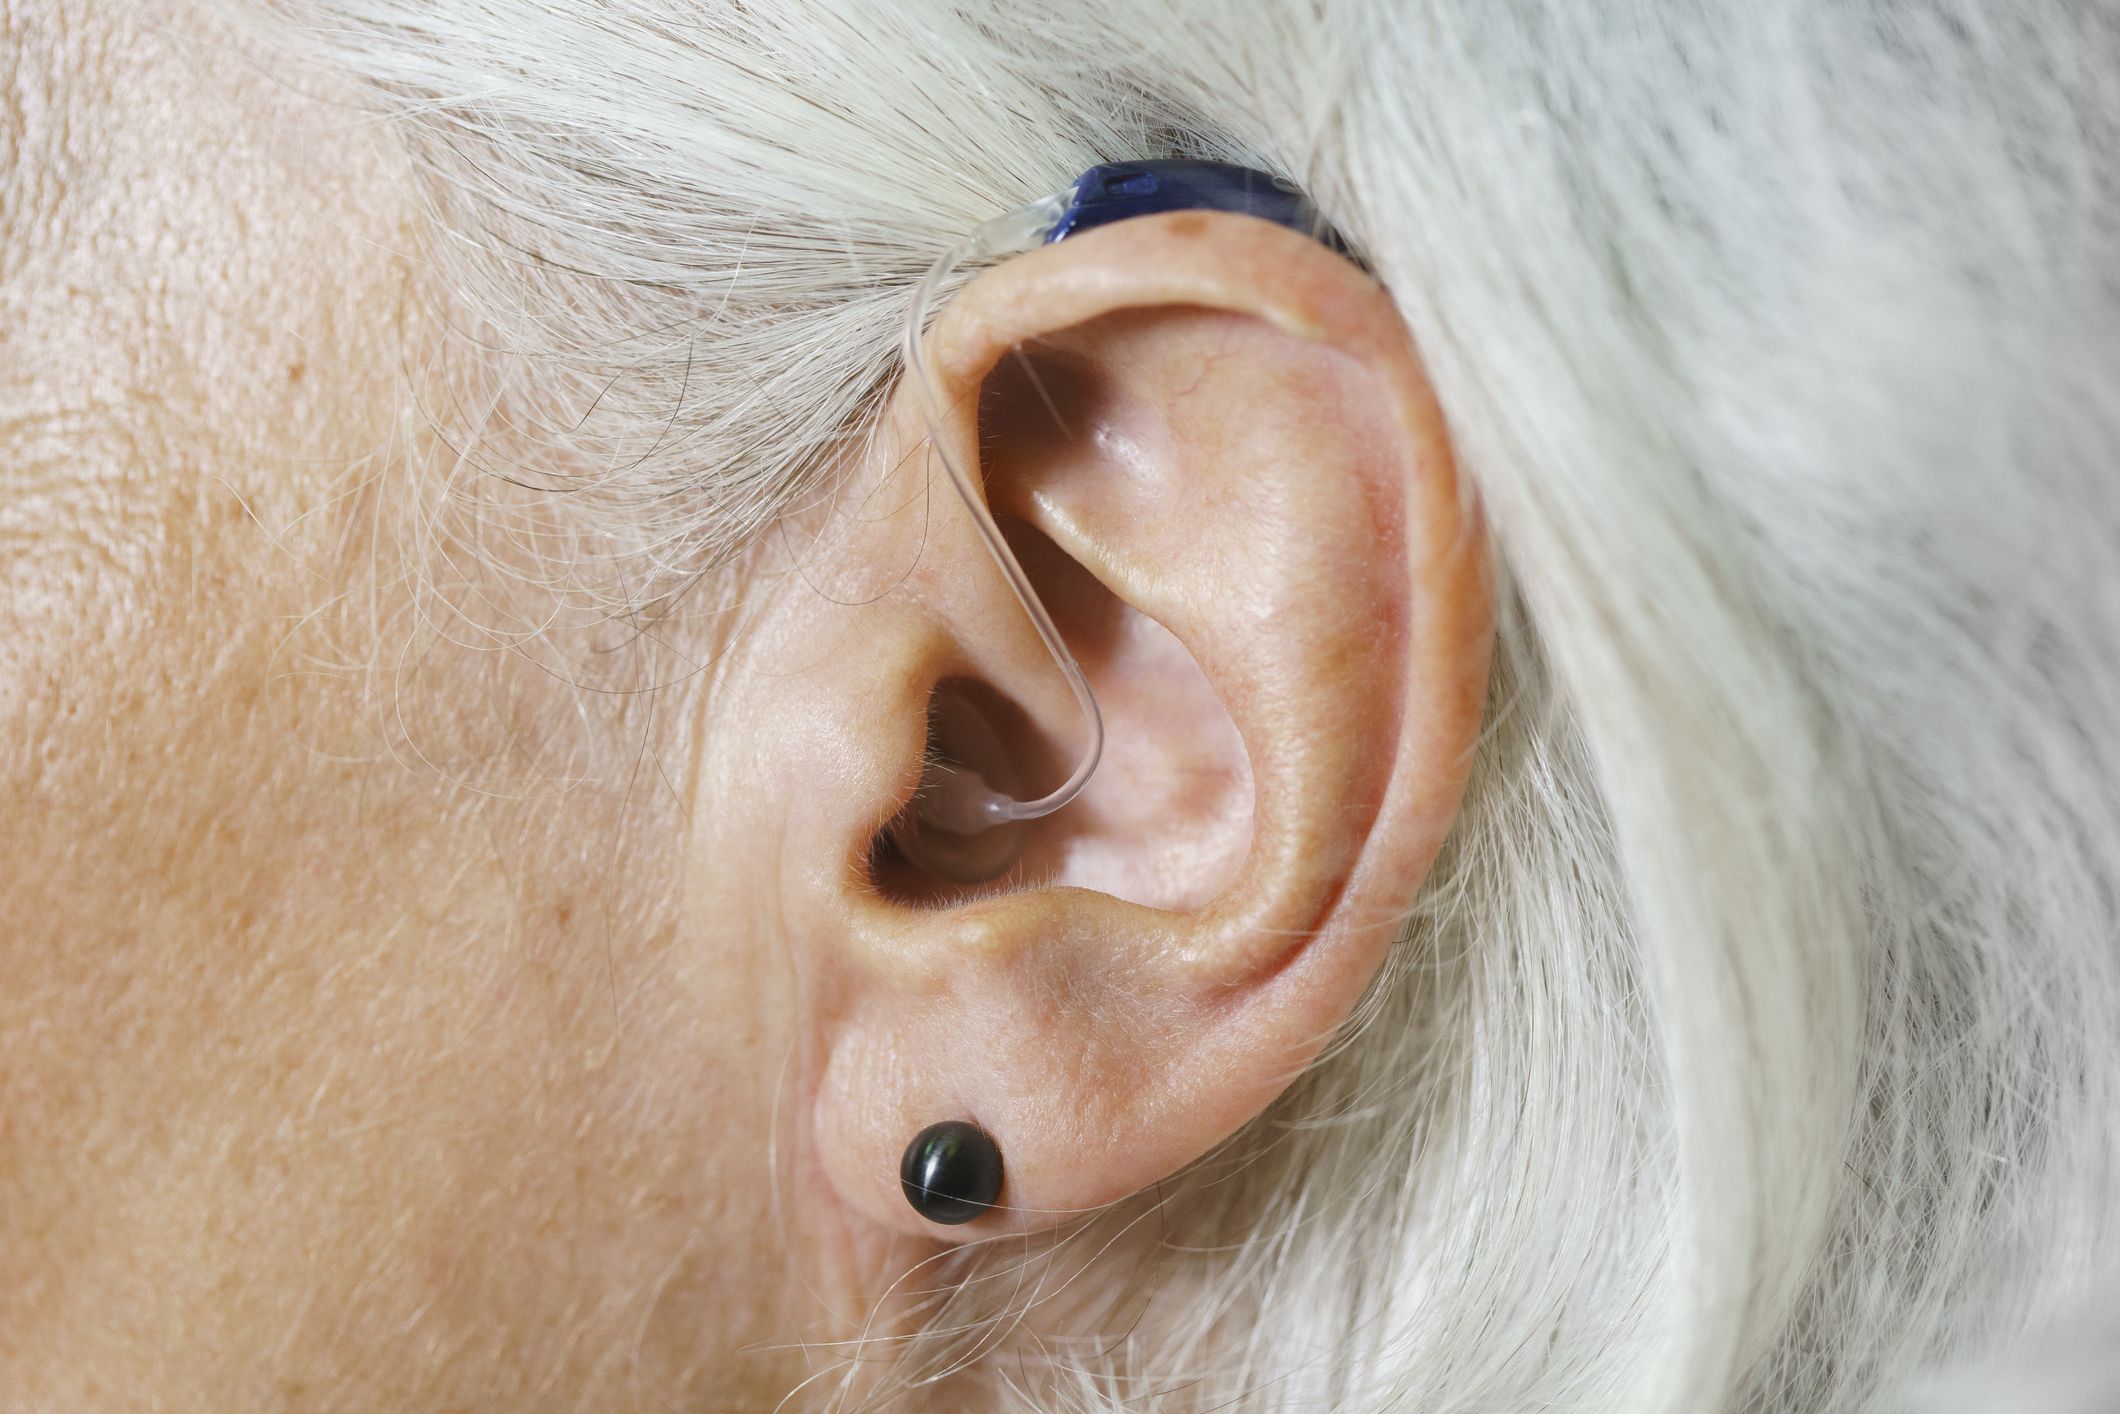 Dr. Pops Blackhead Pierced Through a Woman's Ear